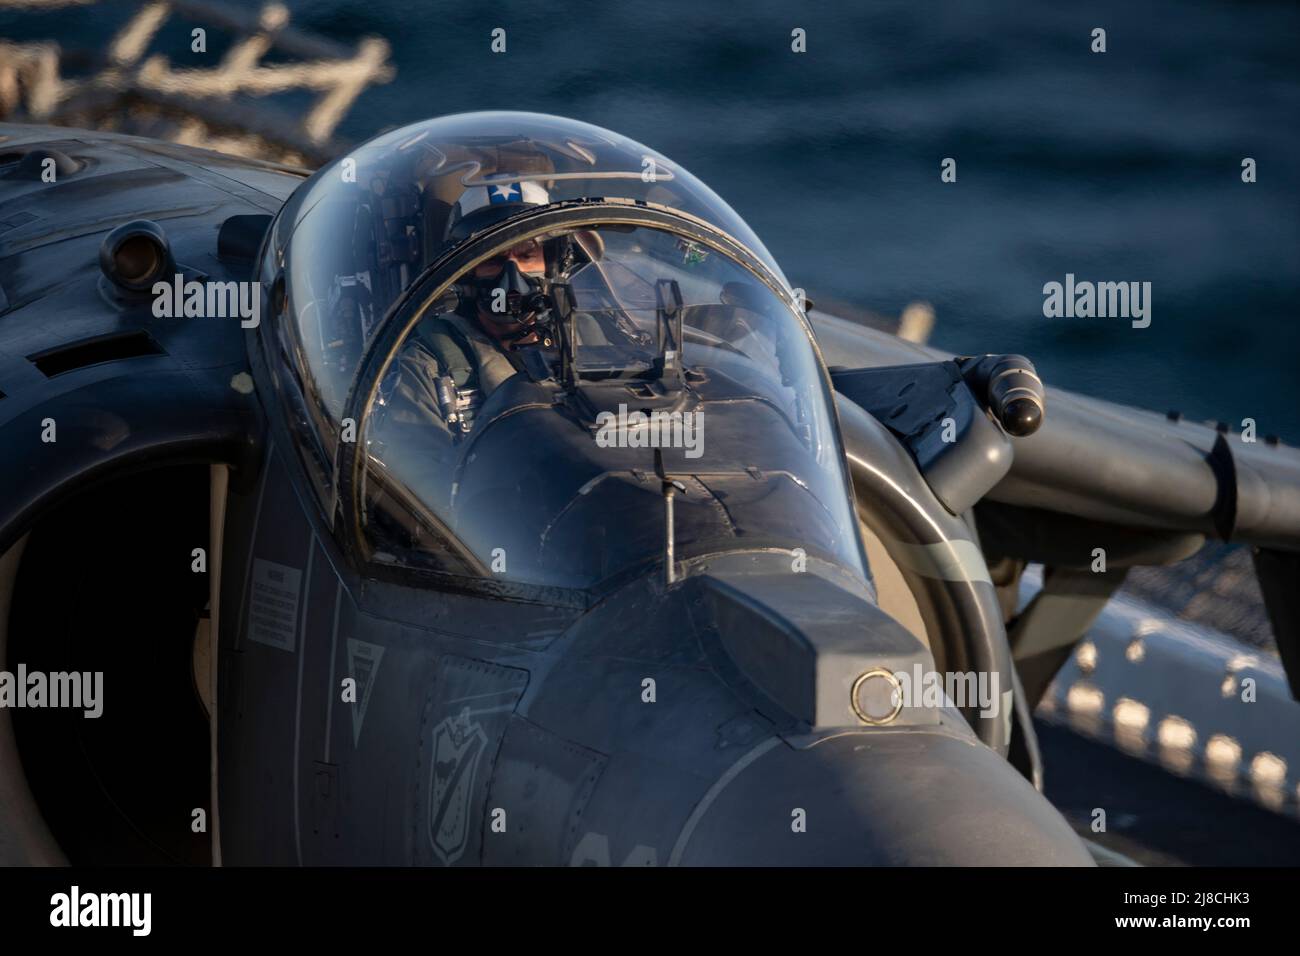 US Marine Corps AV-8B Harrier adjunto al Essex 214 de Black Sheep of Marine Attack, se prepara para el lanzamiento desde la cubierta de vuelo del buque anfibio de asalto USS Essex, clase Wasp, el 21 de marzo de 2021 en el Océano Pacífico. Foto de stock